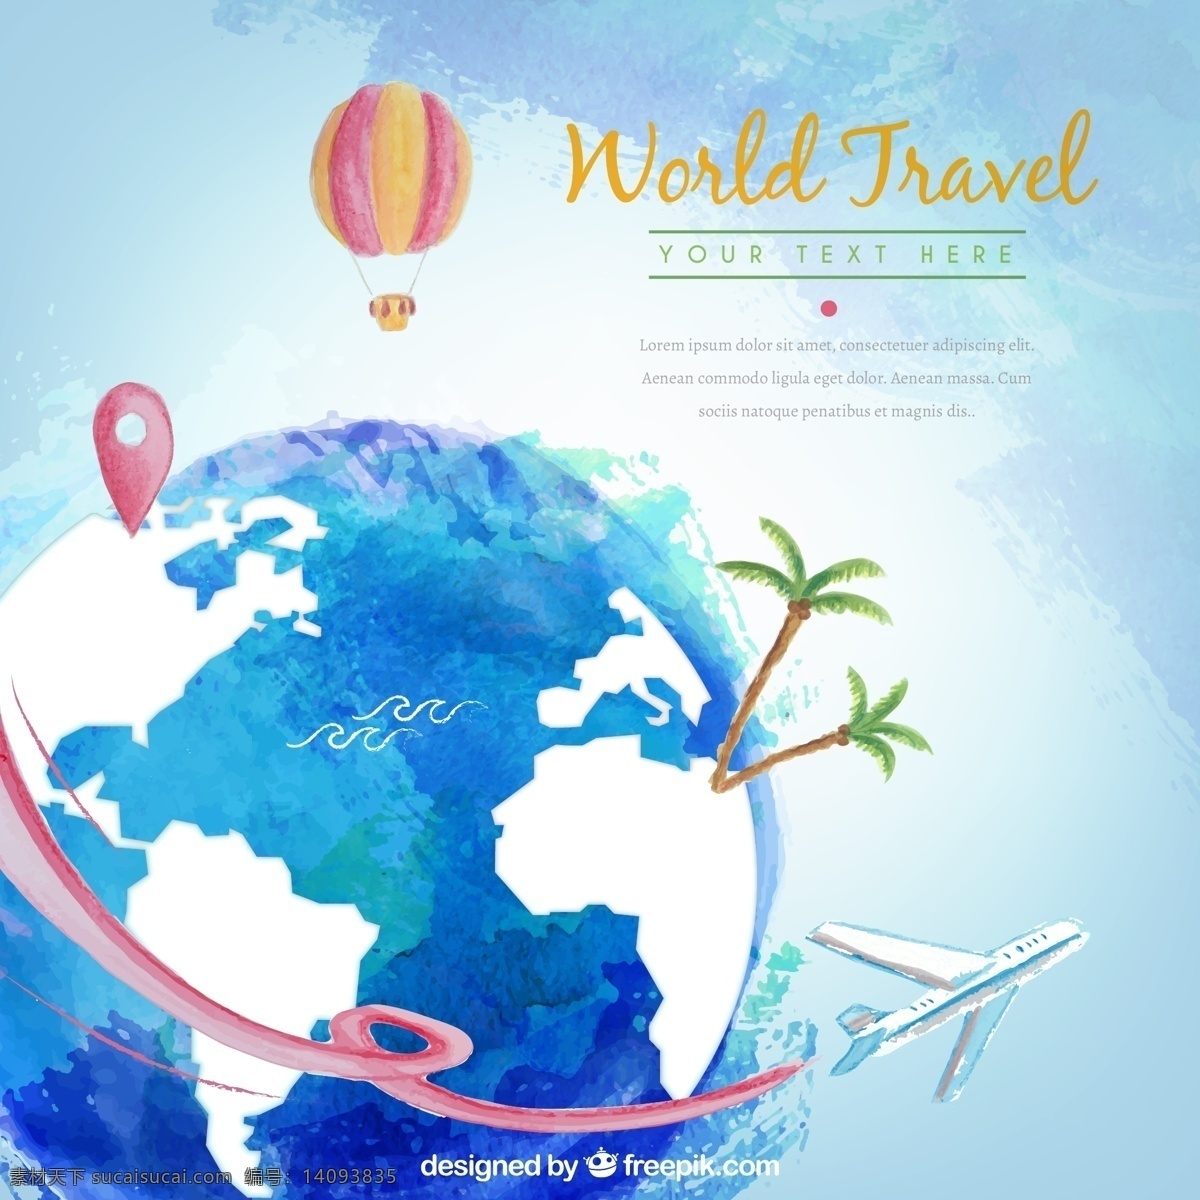 水彩 绘 世界 旅行 插画 矢量 水彩绘 地球 飞机 热气球 蓝天 椰树